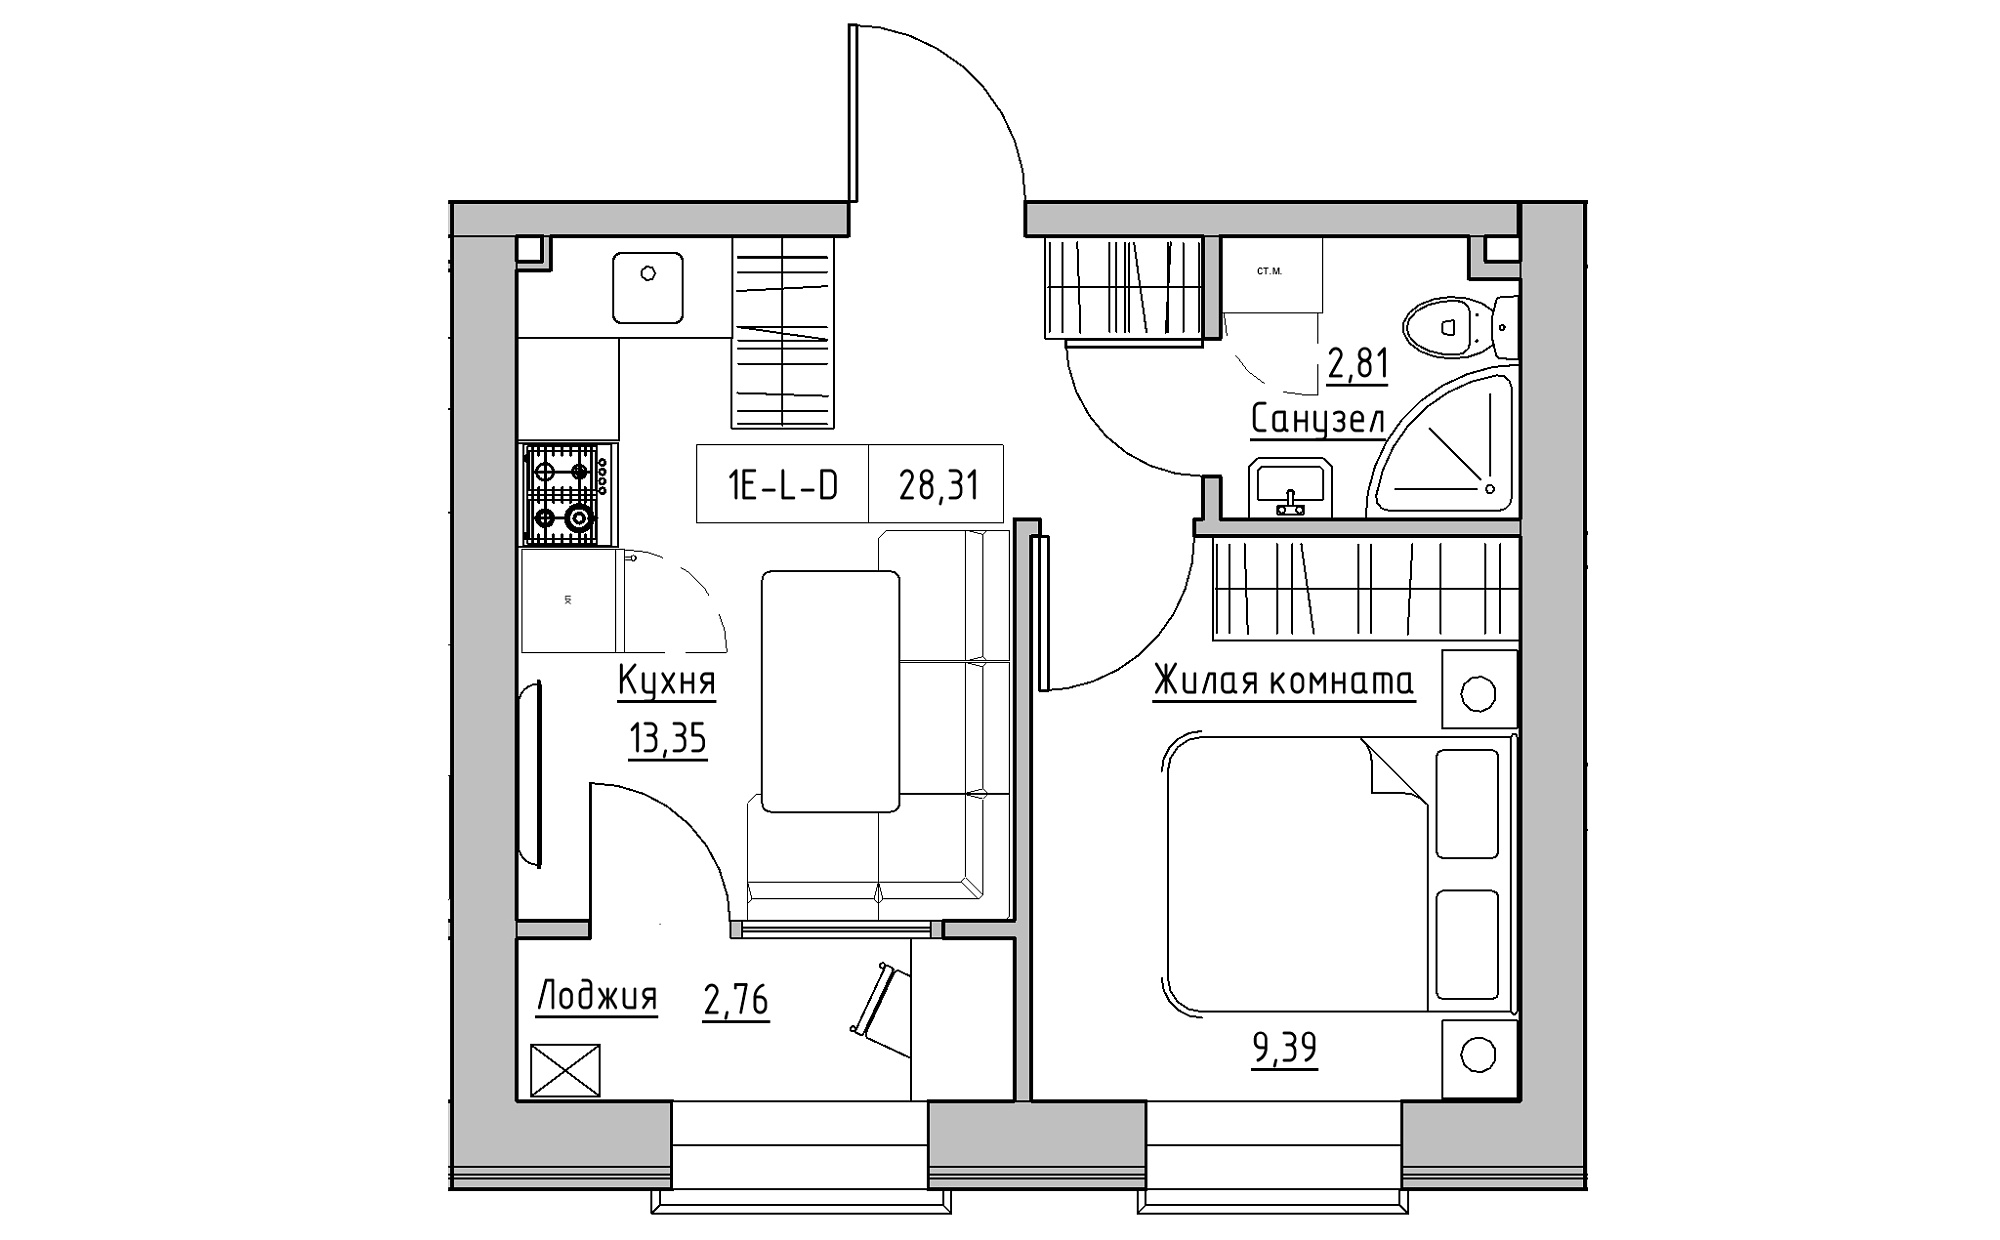 Планування 1-к квартира площею 28.31м2, KS-022-03/0001.